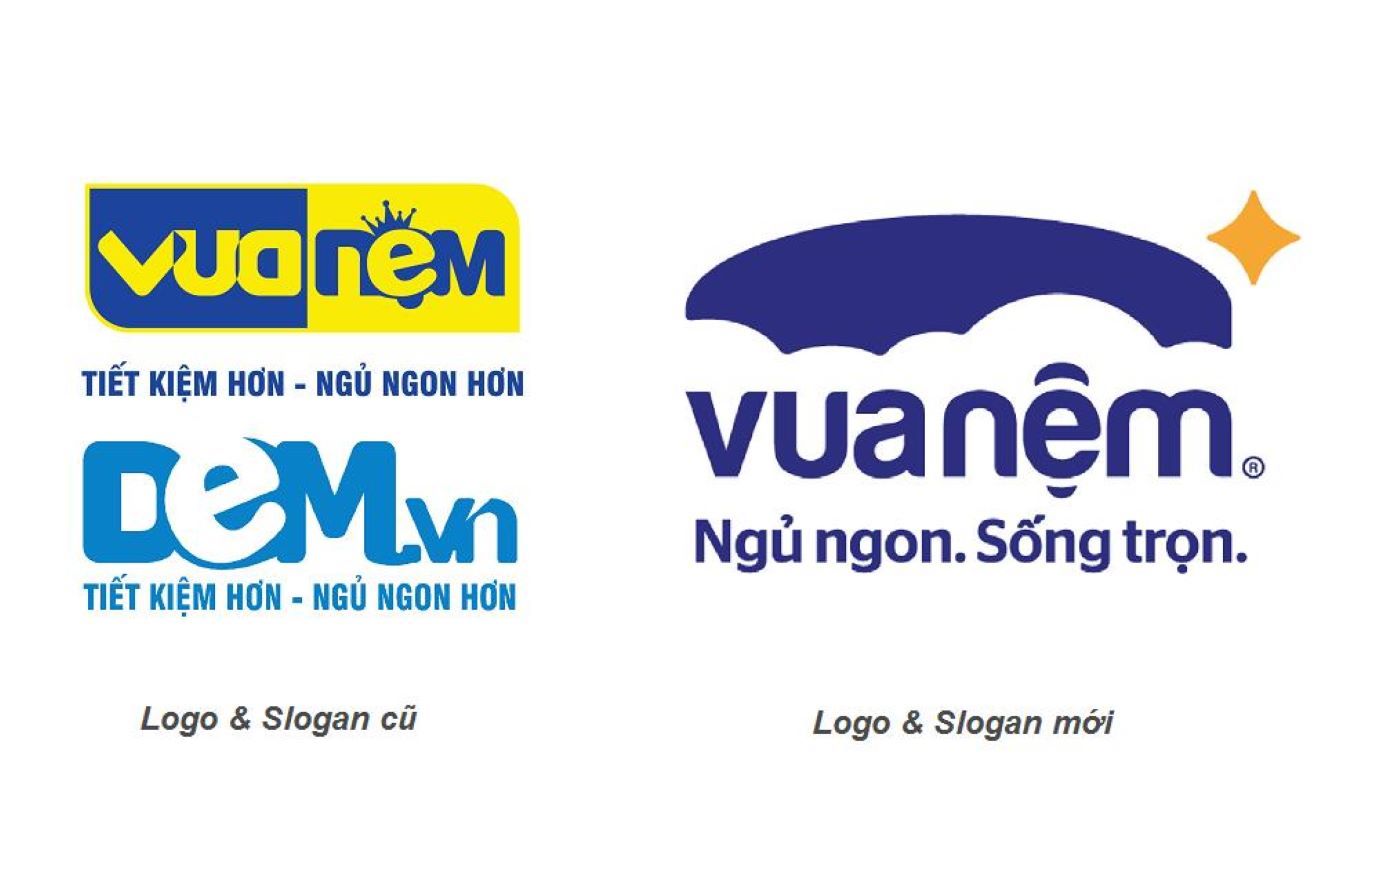 logo và slogan mới của vua nệm